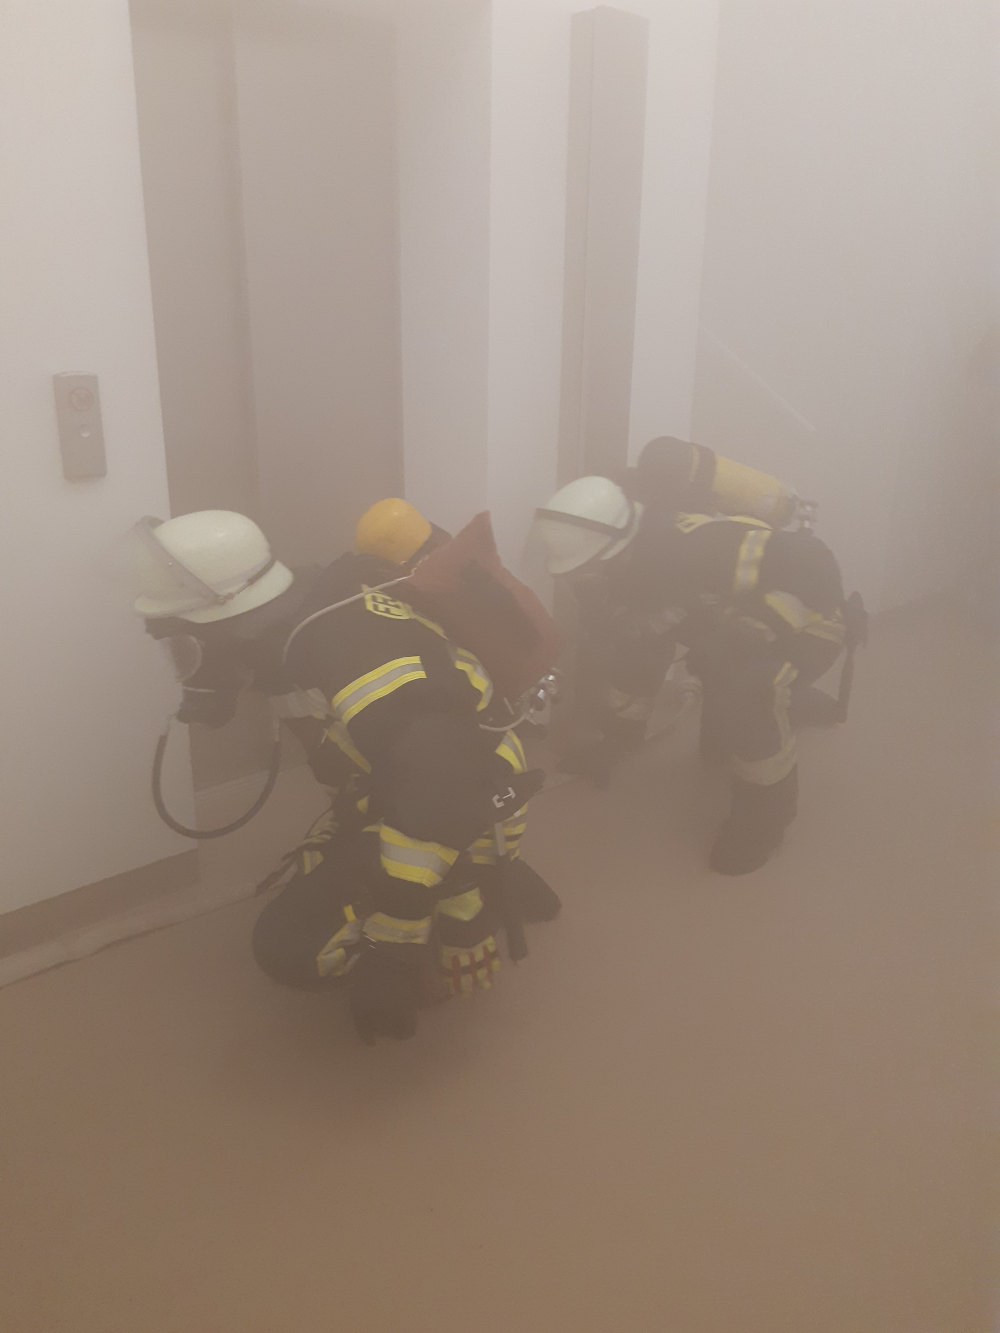 Zwei Feuerwehrleute in geduckter Halteung vor einem geschlossenen Fahrstuhl. Der Raum ist mit hellem Rauch vernebelt.